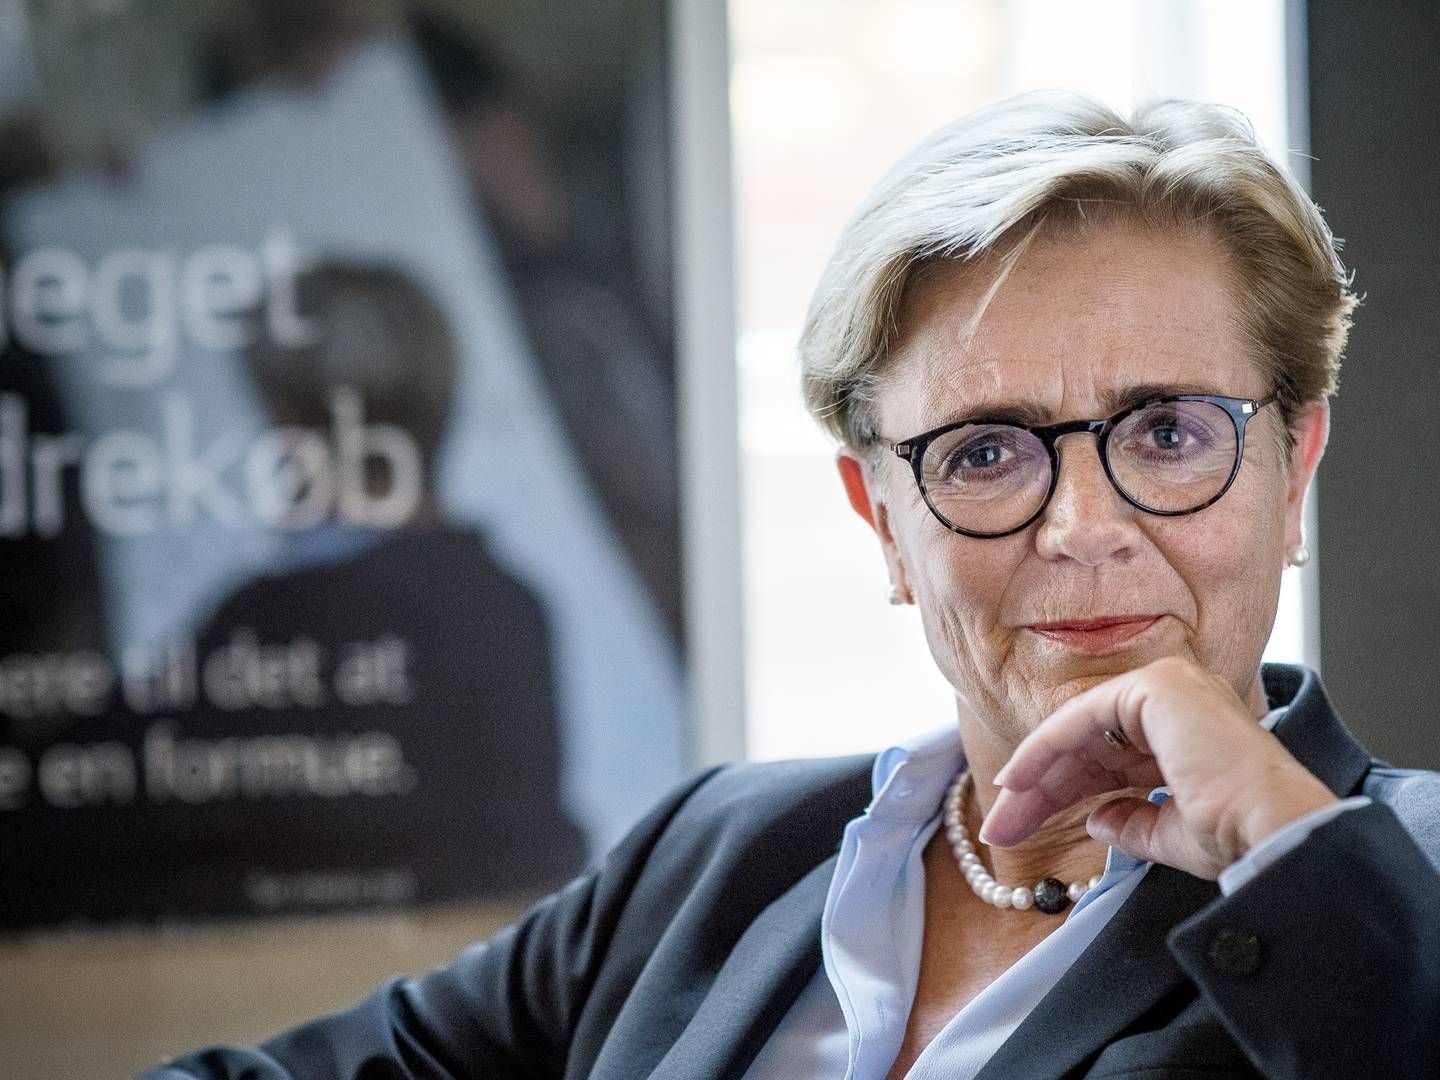 Sydbank-topchef Karen Frøsig betegner udsigterne for resten af 2022 som begrænset, hvilket får hende til at være forsigtig med at love fortsat høje vækstrater på udlån." | Foto: Sydbank/PR